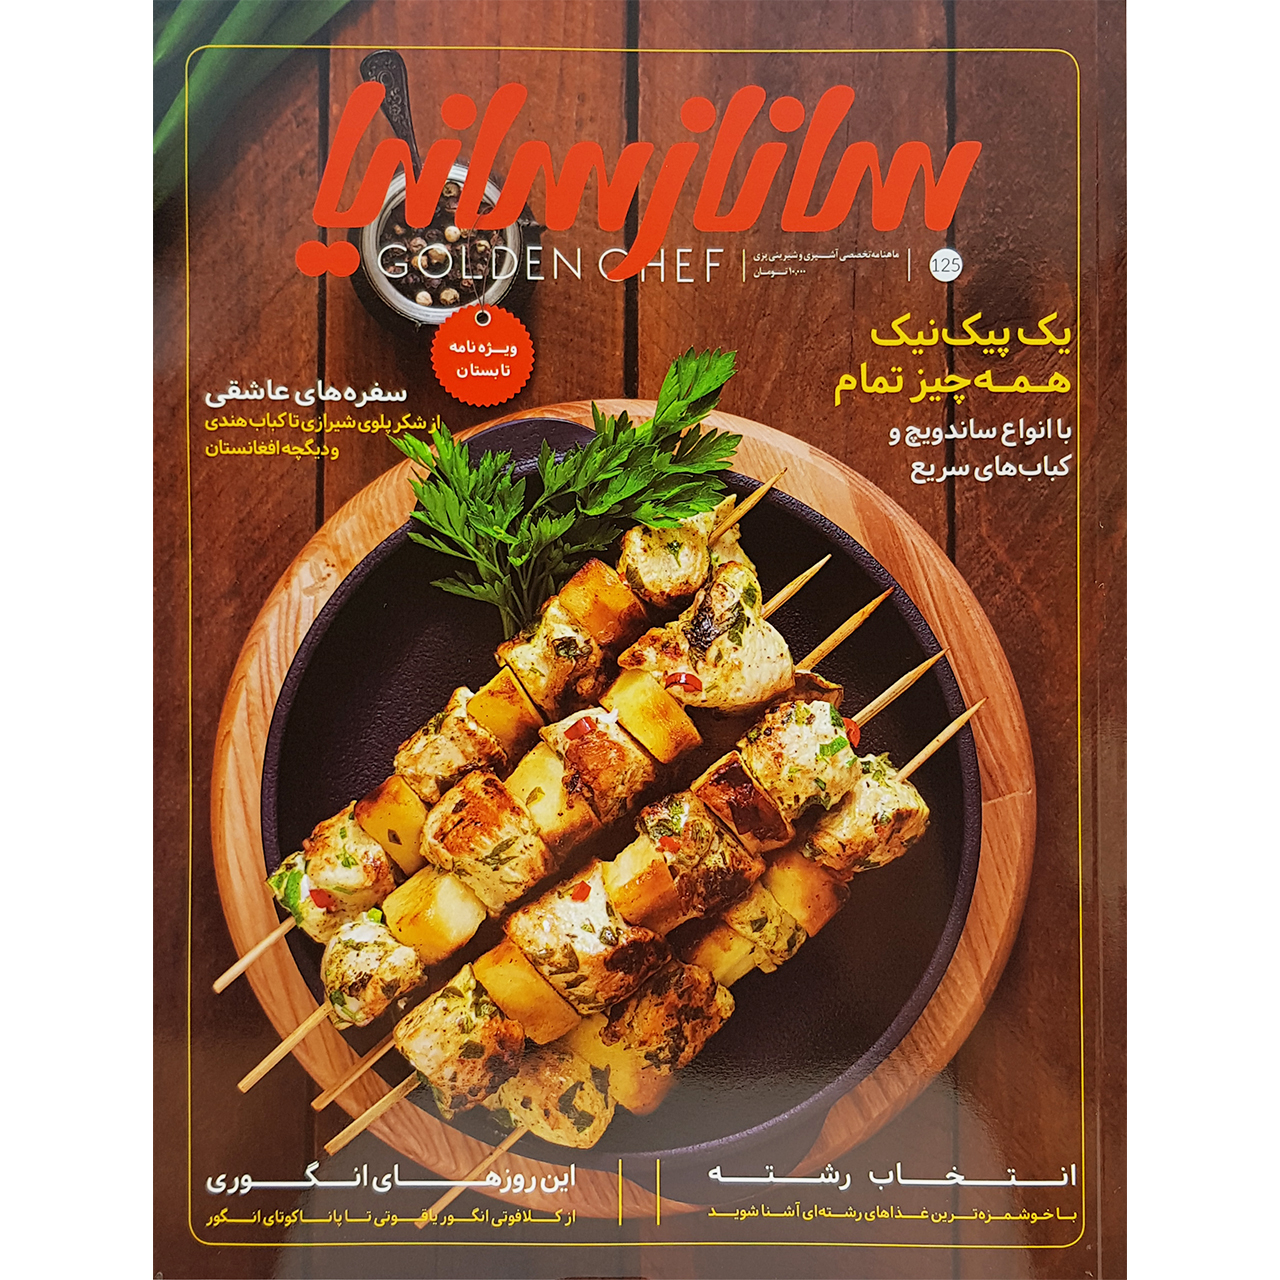 ماهنامه تخصصی آشپزی و شیرینی پزی ساناز سانیا شماره 125